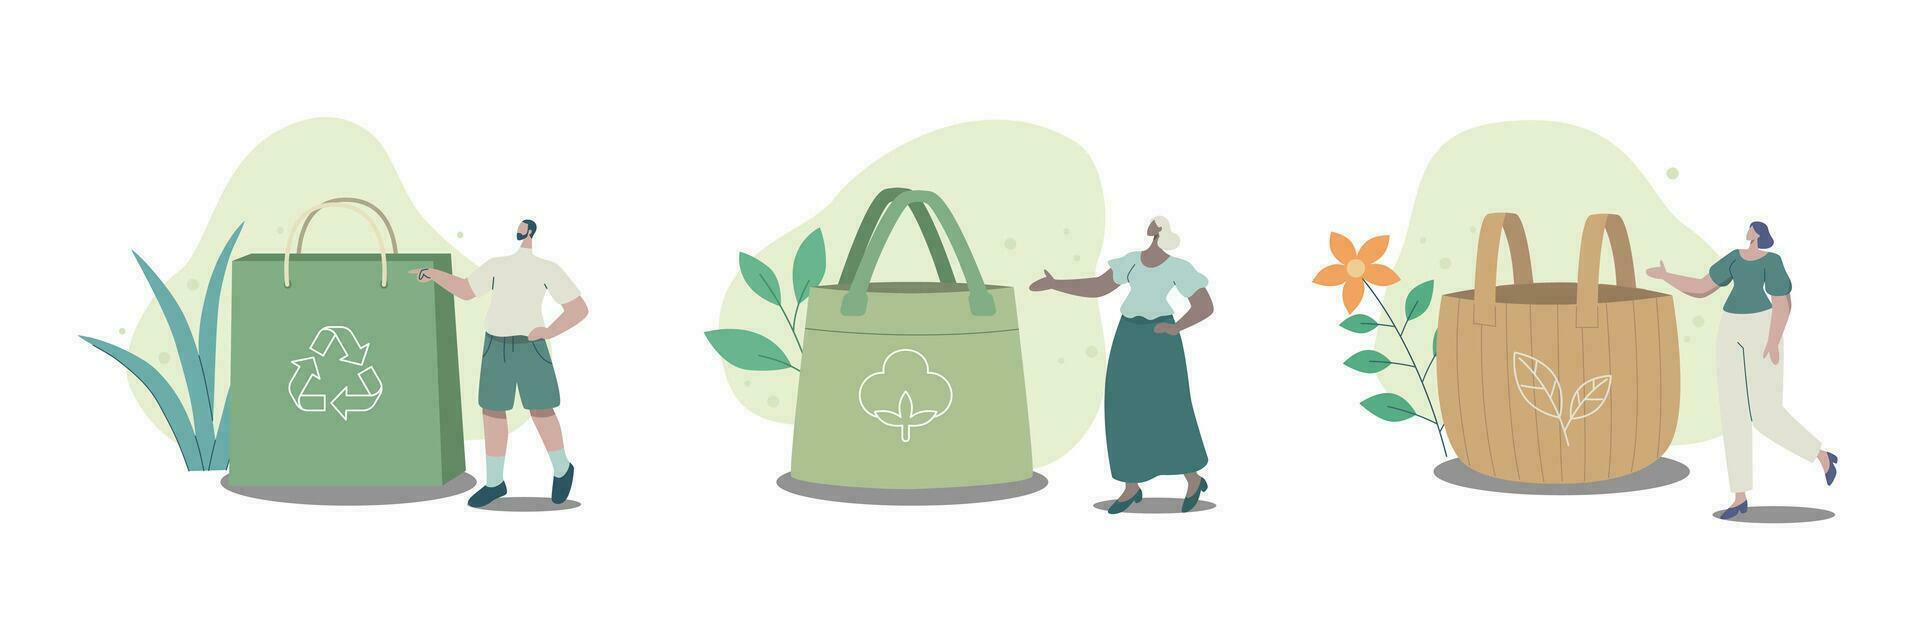 conjunto do eco bolsas, de Meio Ambiente amigáveis embalagem para compras. reciclável biodegradável sustentável embalagem. vetor Projeto ilustração.